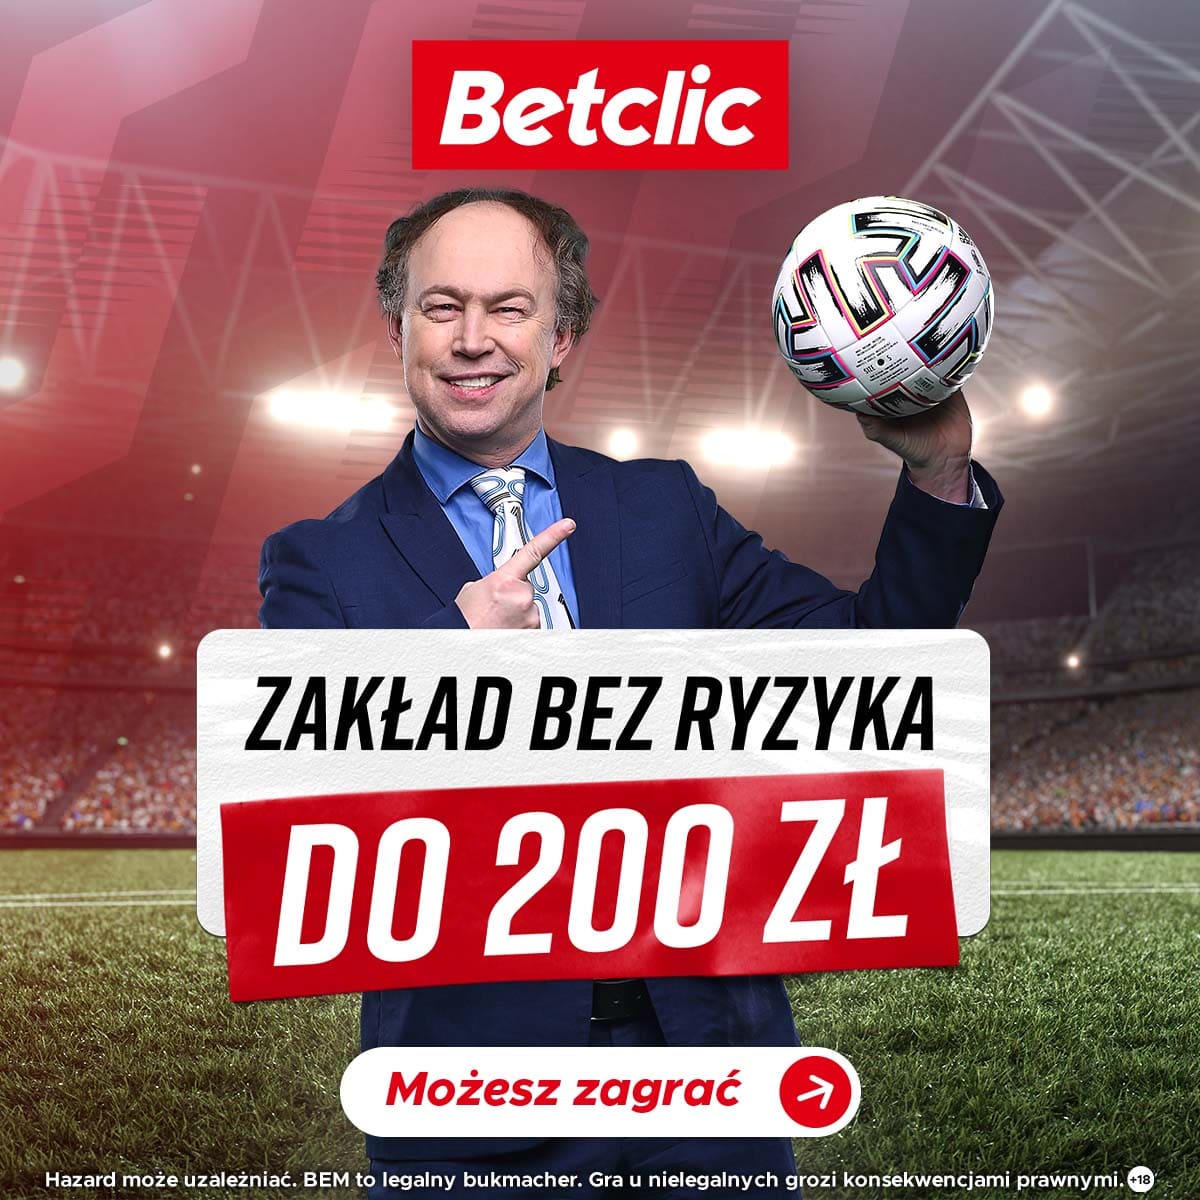 BetClic Polska